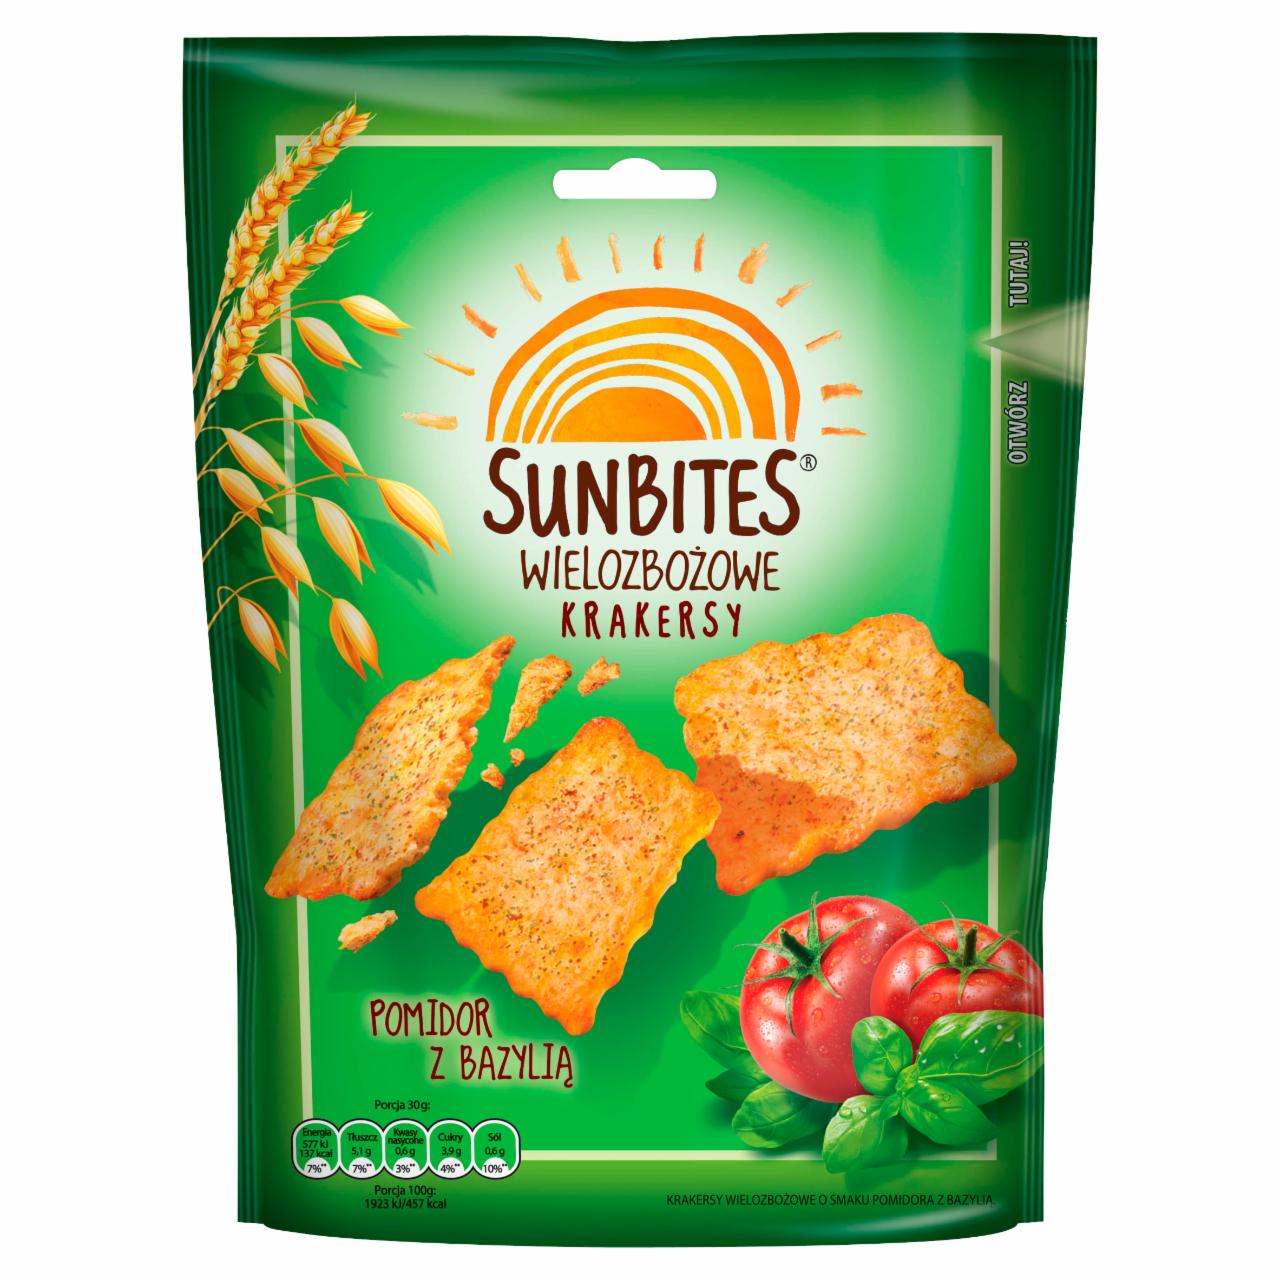 Zdjęcia - Sunbites Wielozbożowe krakersy pomidor z bazylią 100 g